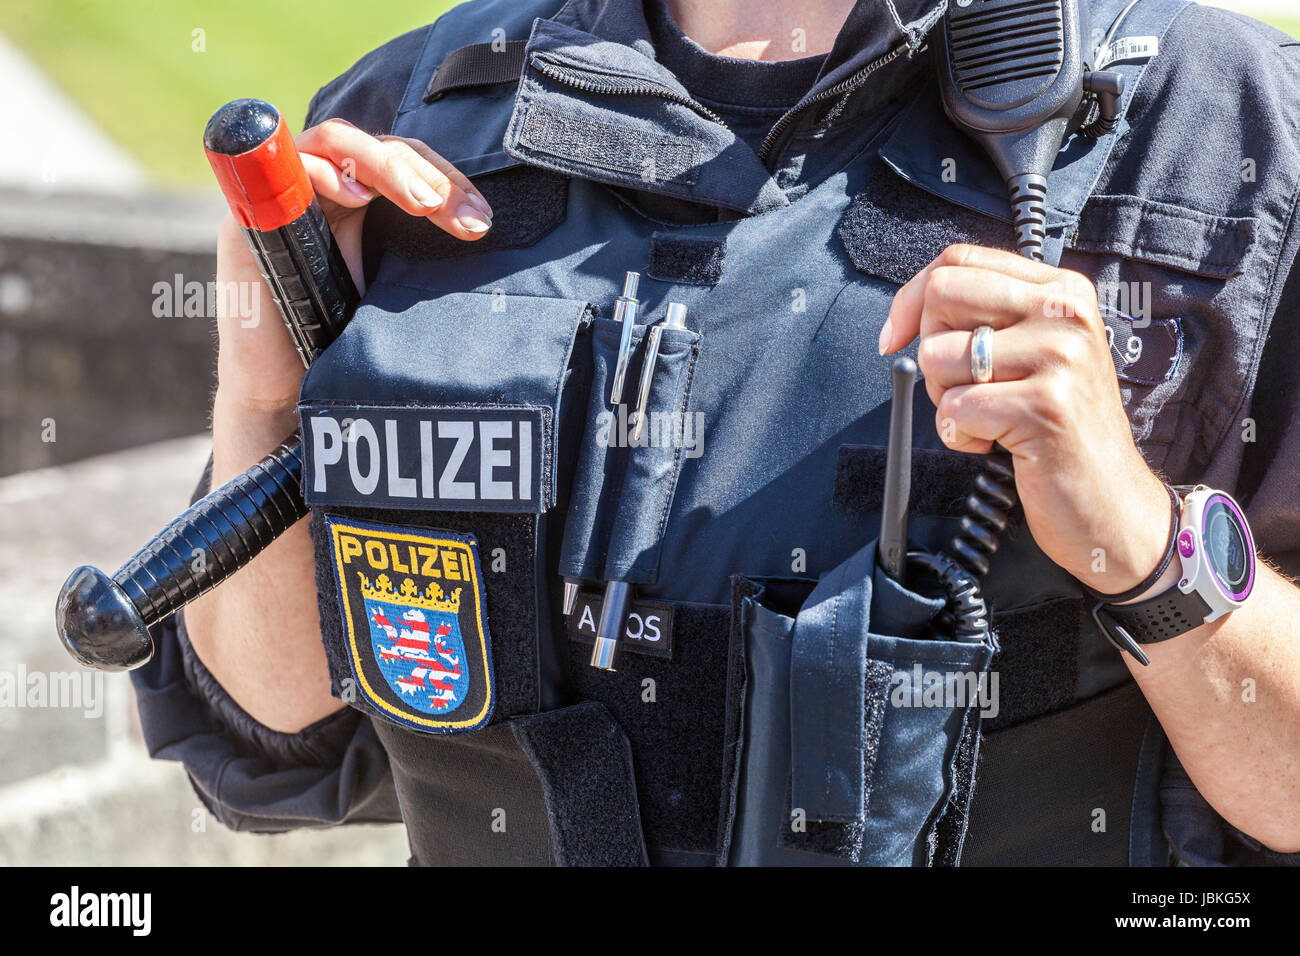 Uniforme de policía alemán, policía alemana mujer de Alemania Foto de stock